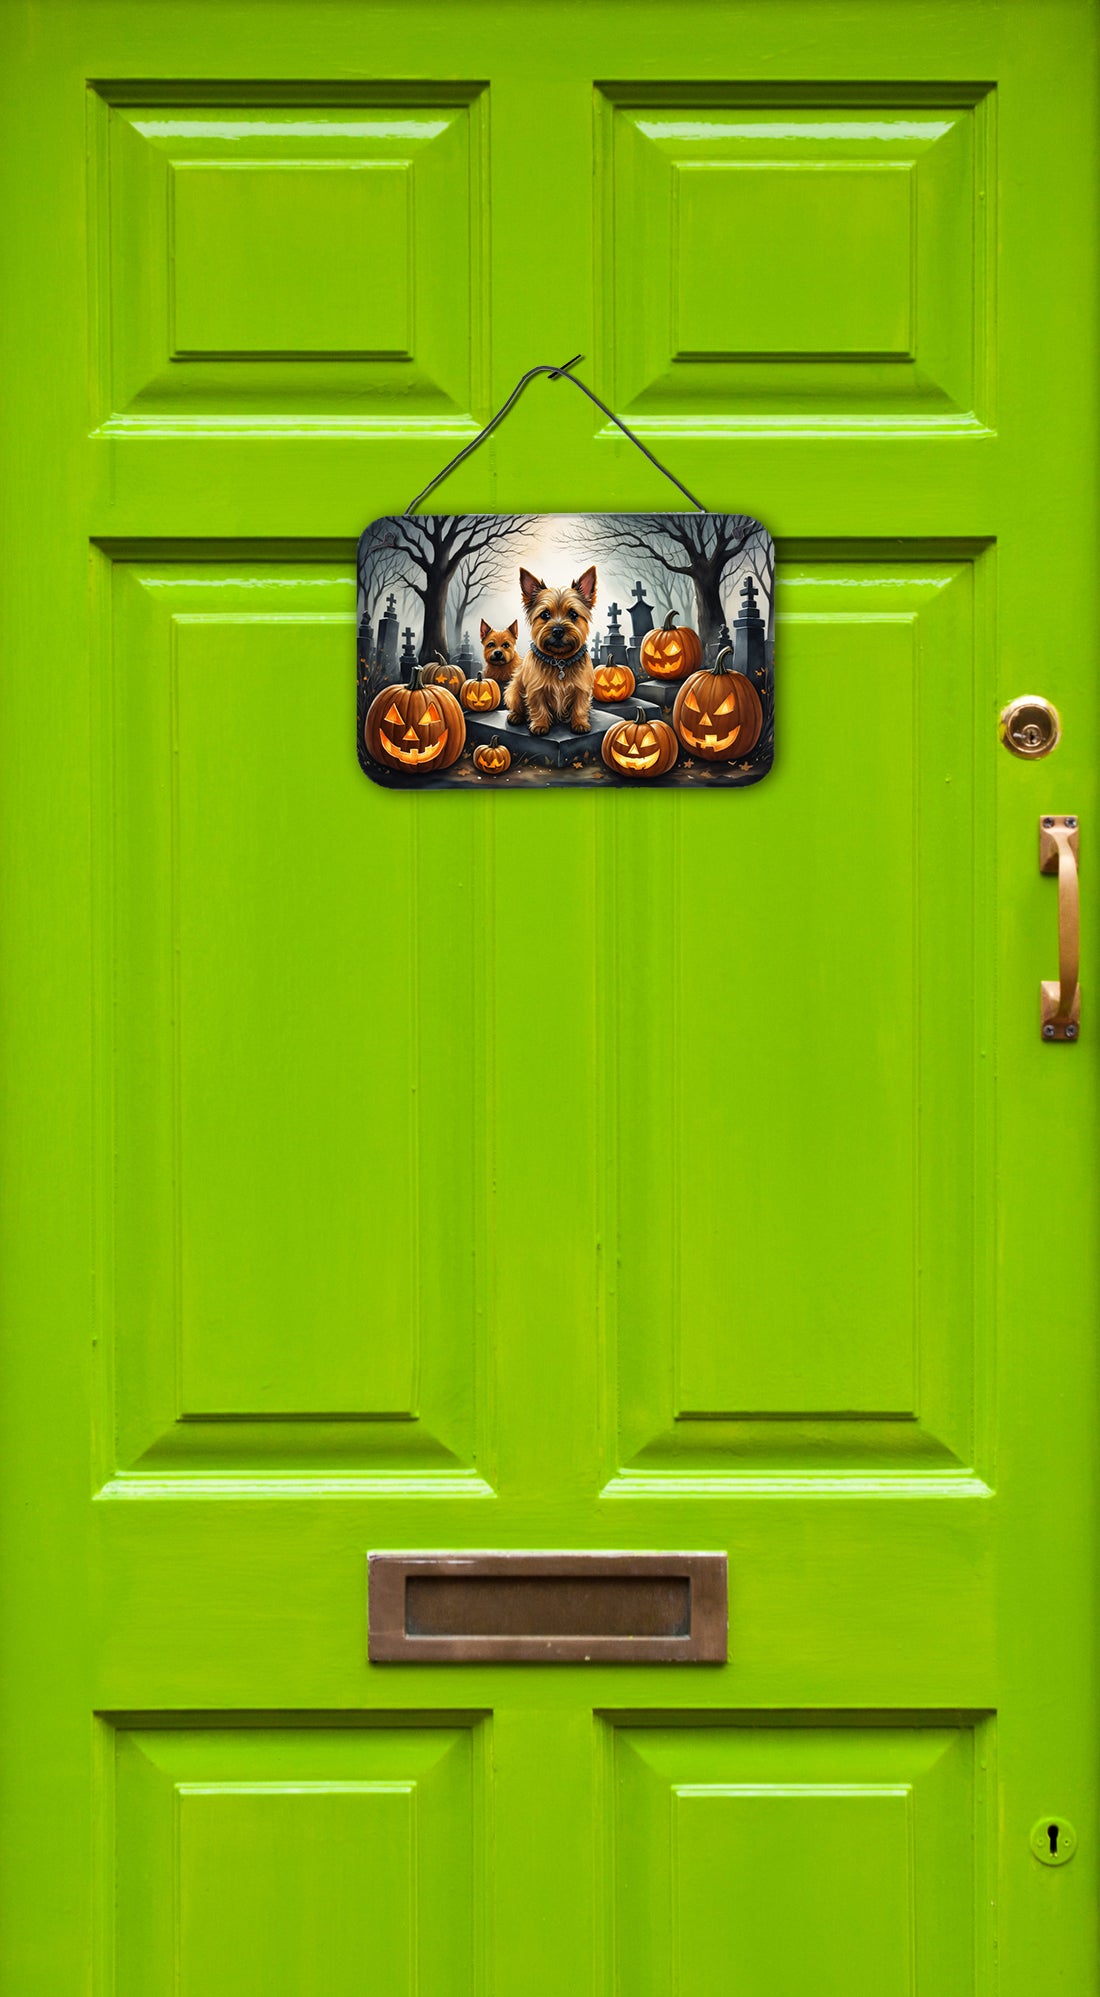 Norwich Terrier Spooky Halloween Wall or Door Hanging Prints